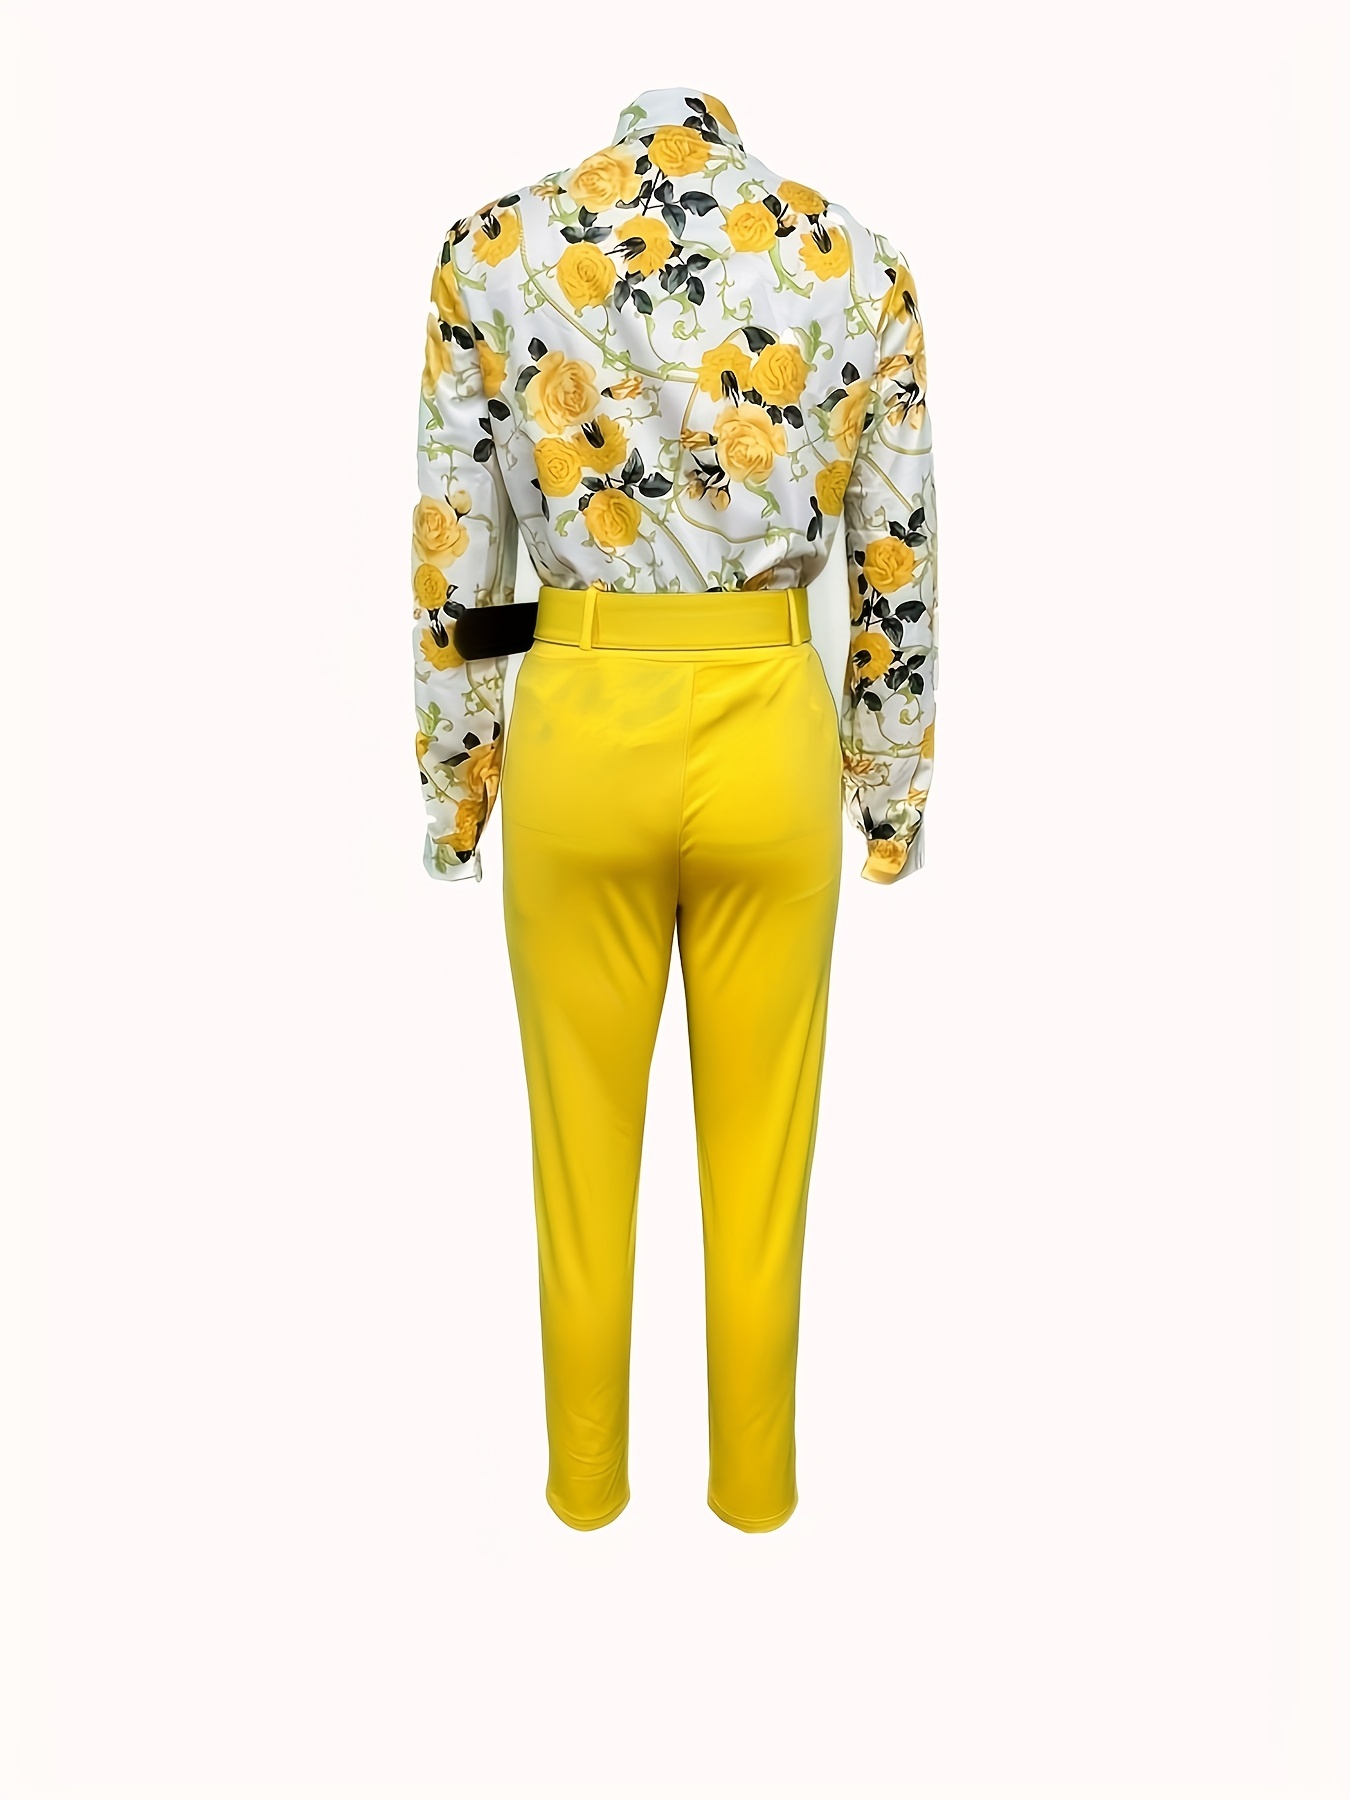 Women Flower Print Short Sleeve Top And Trousers 2 Piece Set L-XXL -  BLZI1153 Size L Color Lt.Blue_8159